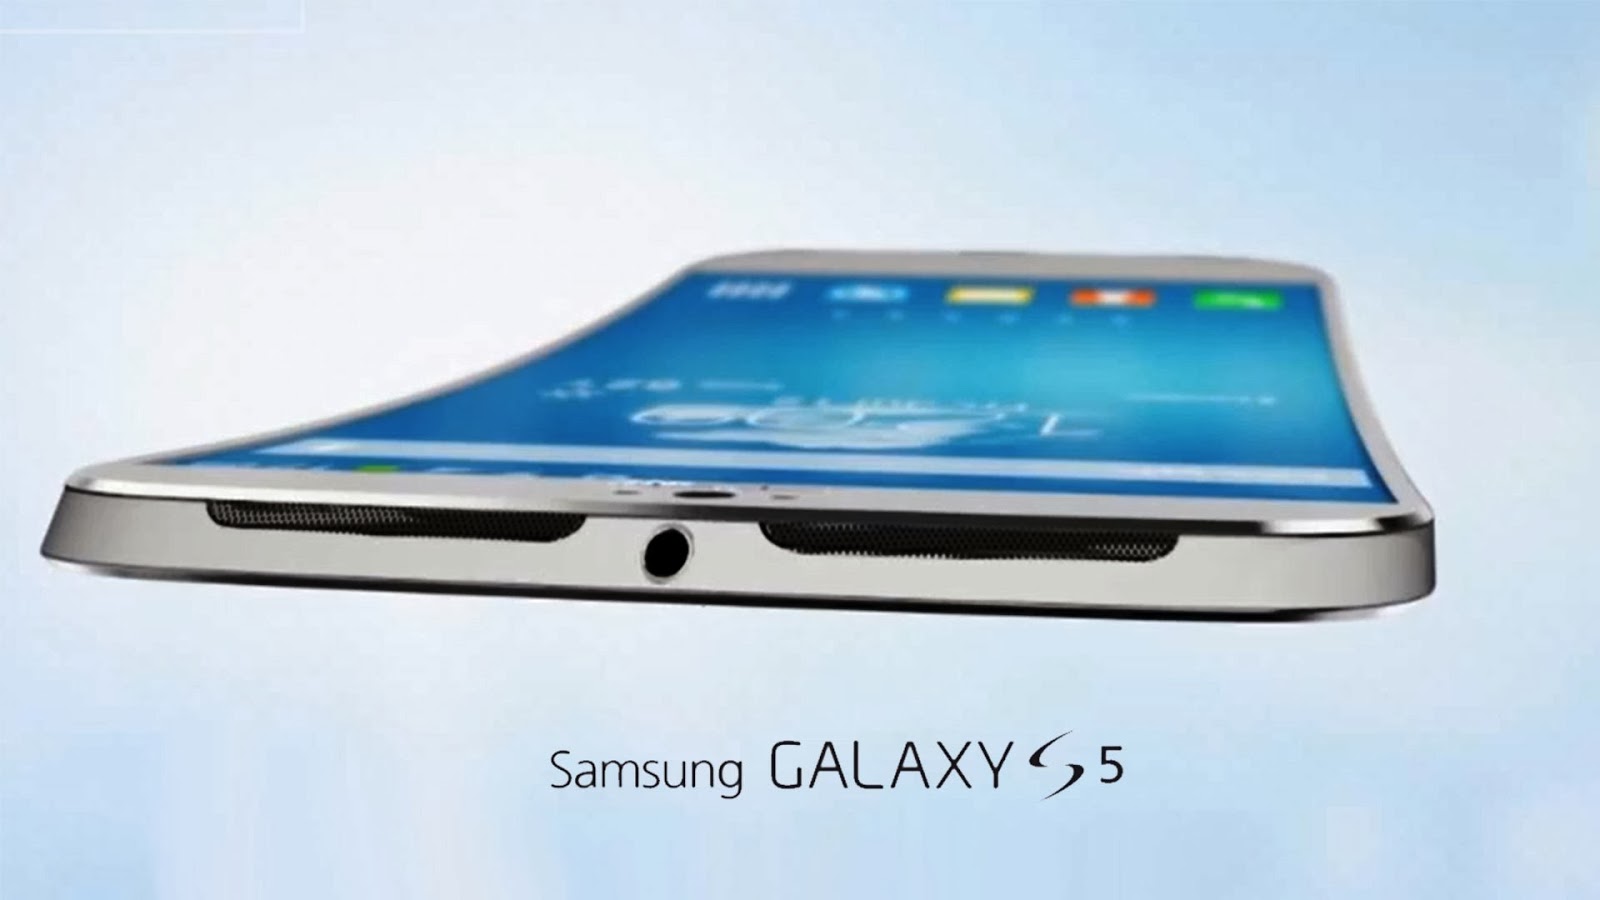 Samsung Galaxy S5 Image HD Wall Wallpaper